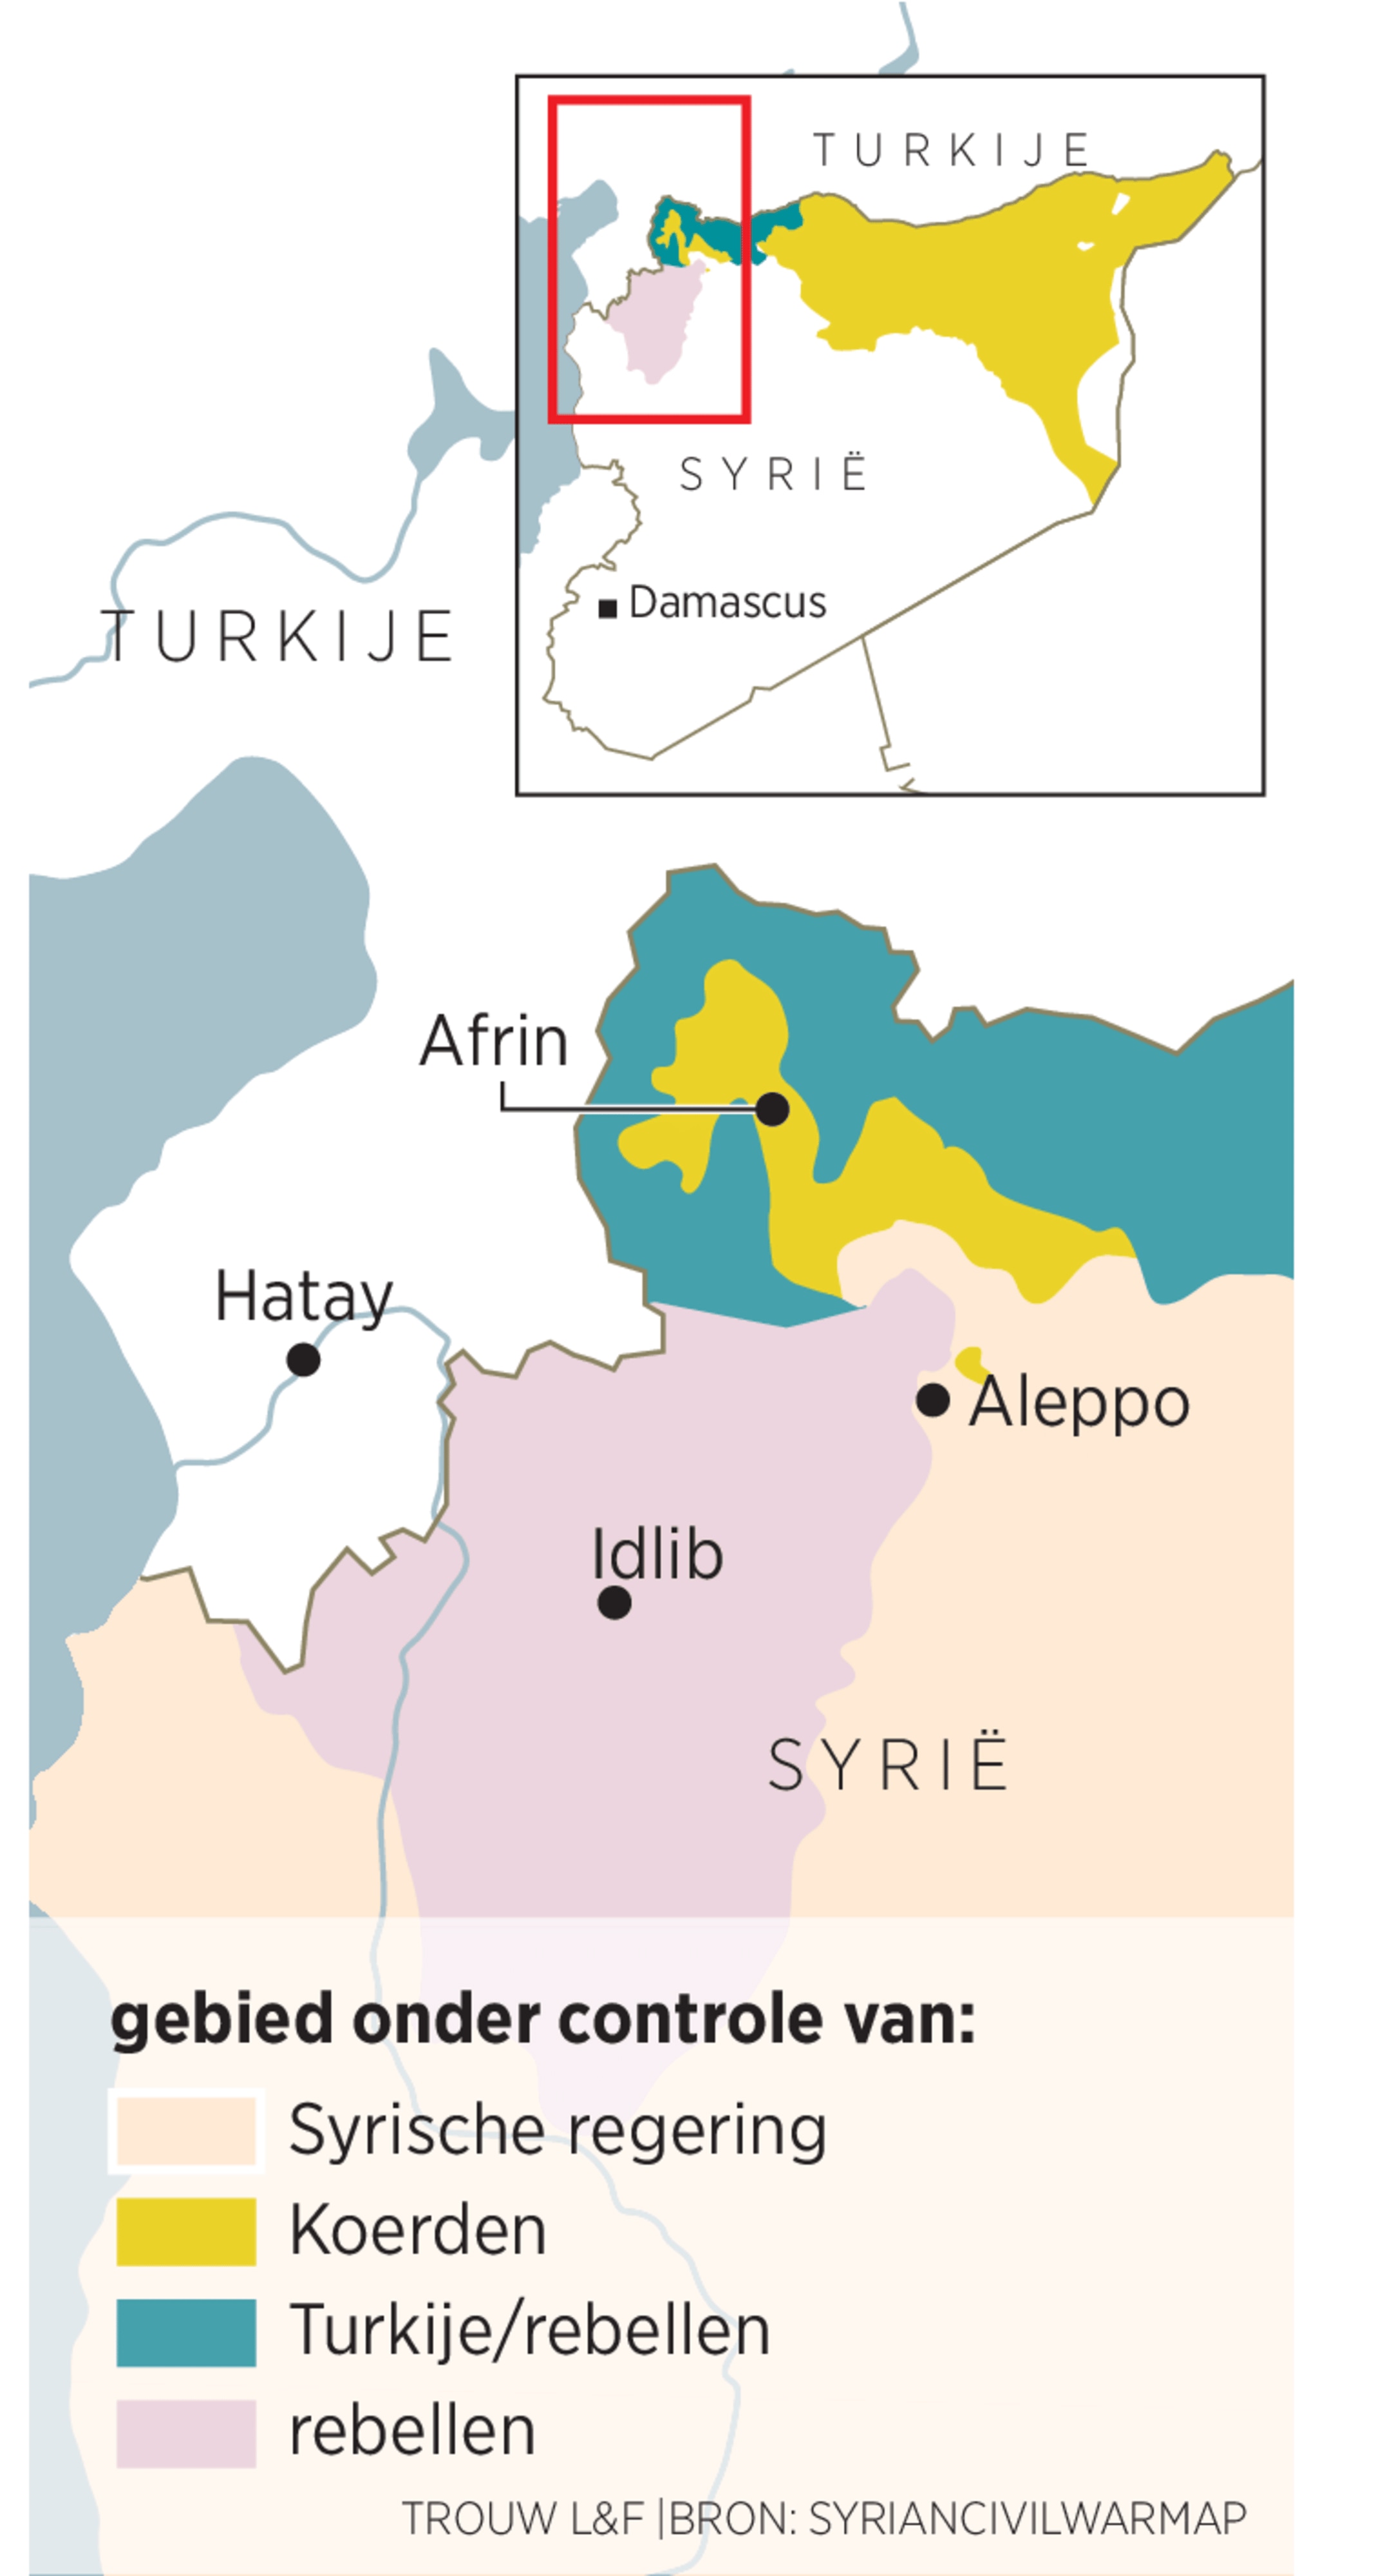 Turkije houdt het Koerdische Afrin in een wurggreep